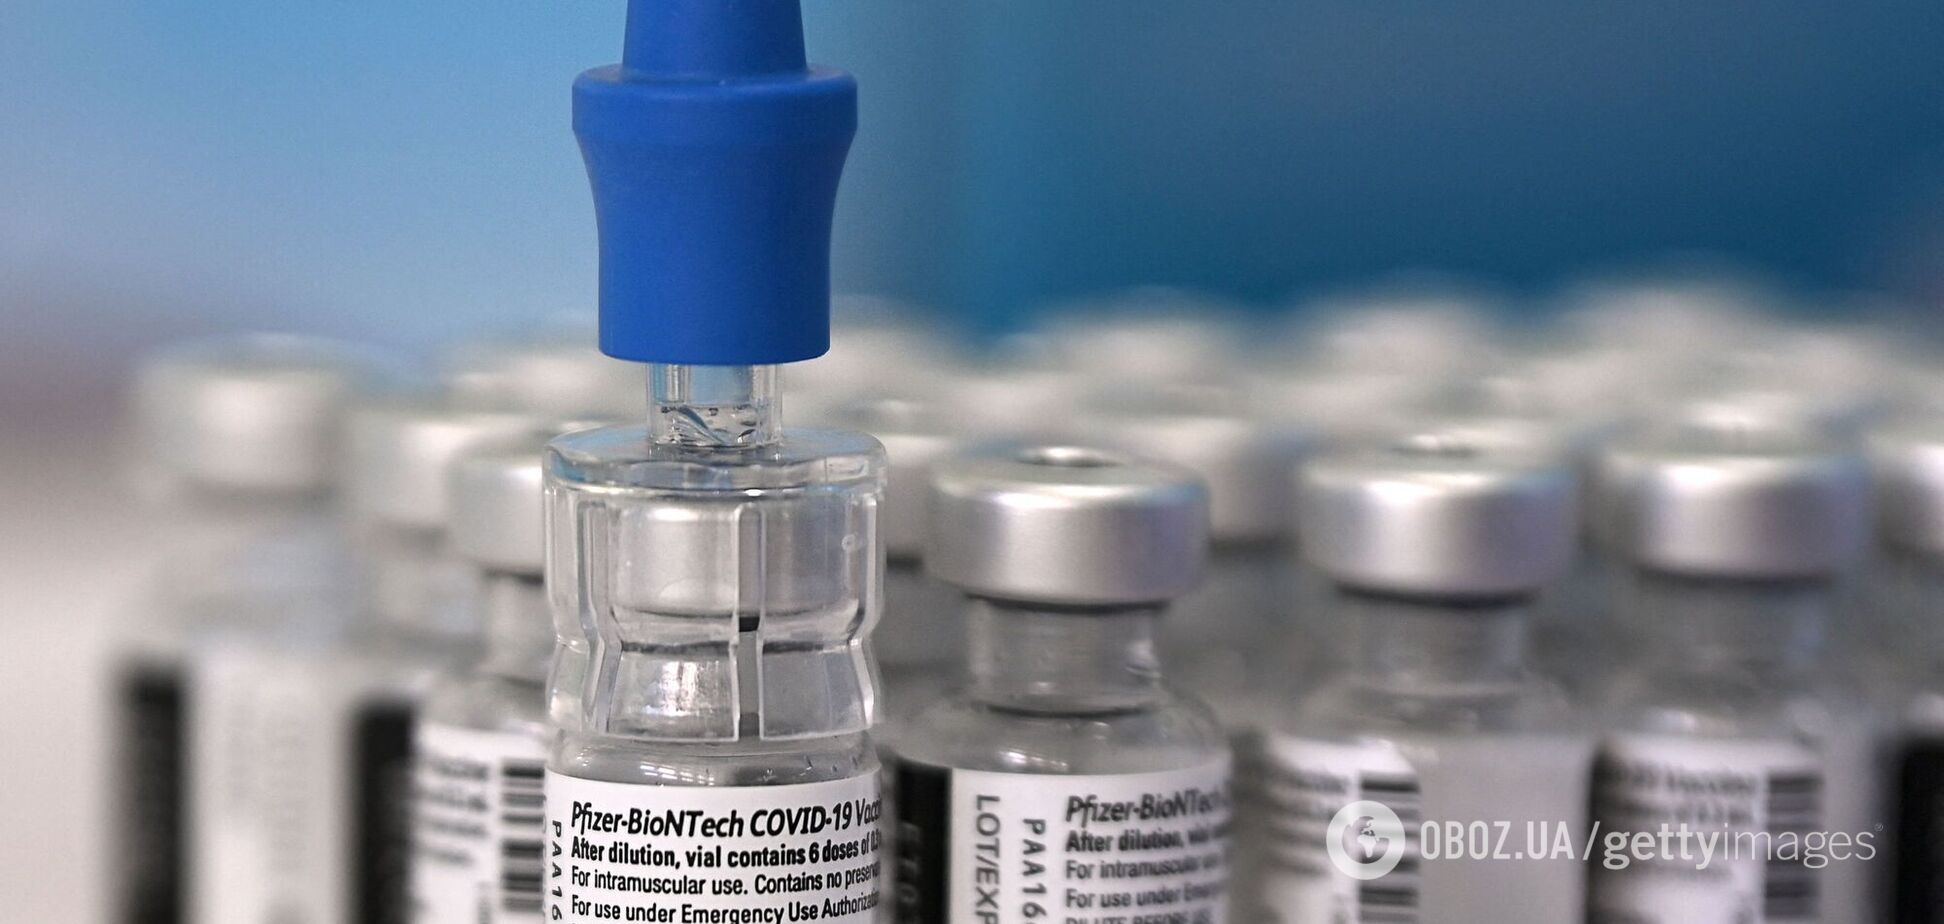 На вакцину от COVID-19 из бюджета Минздрава выделят дополнительные 6,5 млрд грн